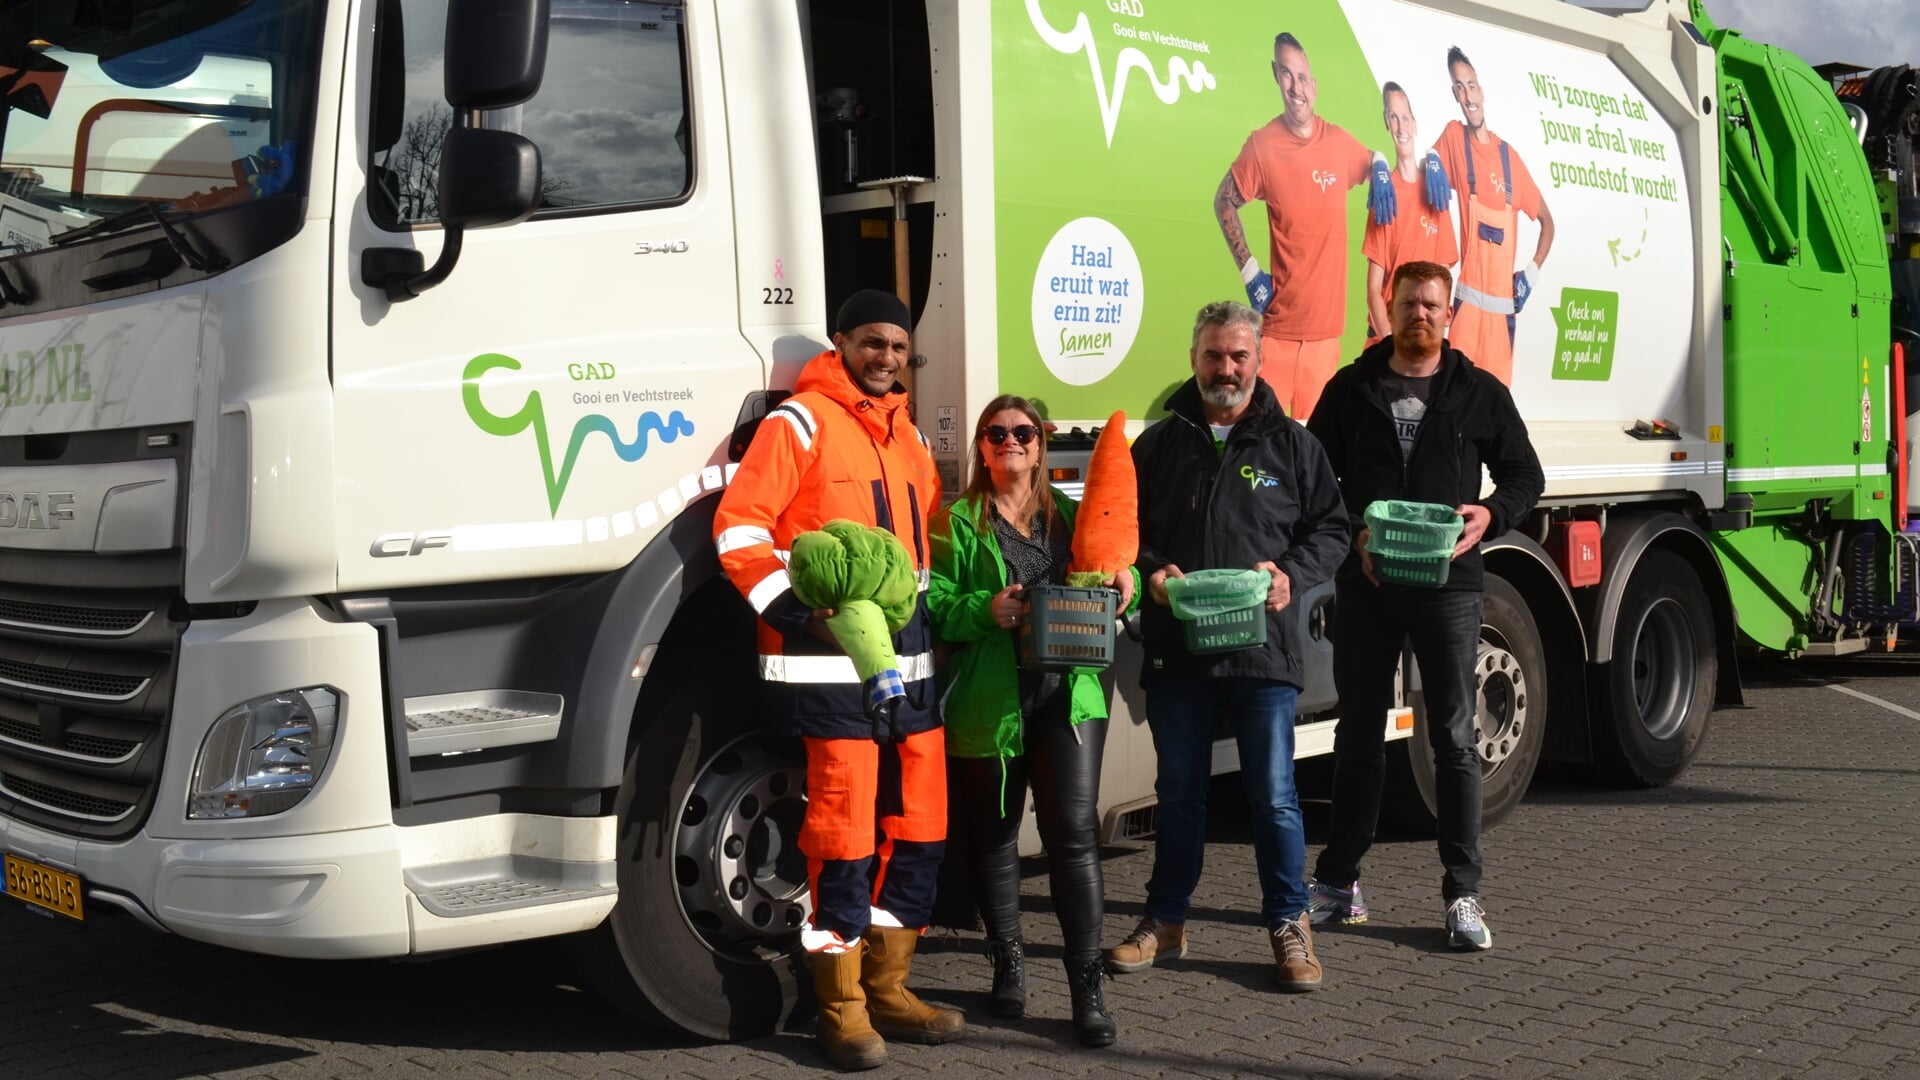 GAD-medewerkers Kurt, Boriska, Anto en Joey voor een vuilniswagen met campagnetekst.